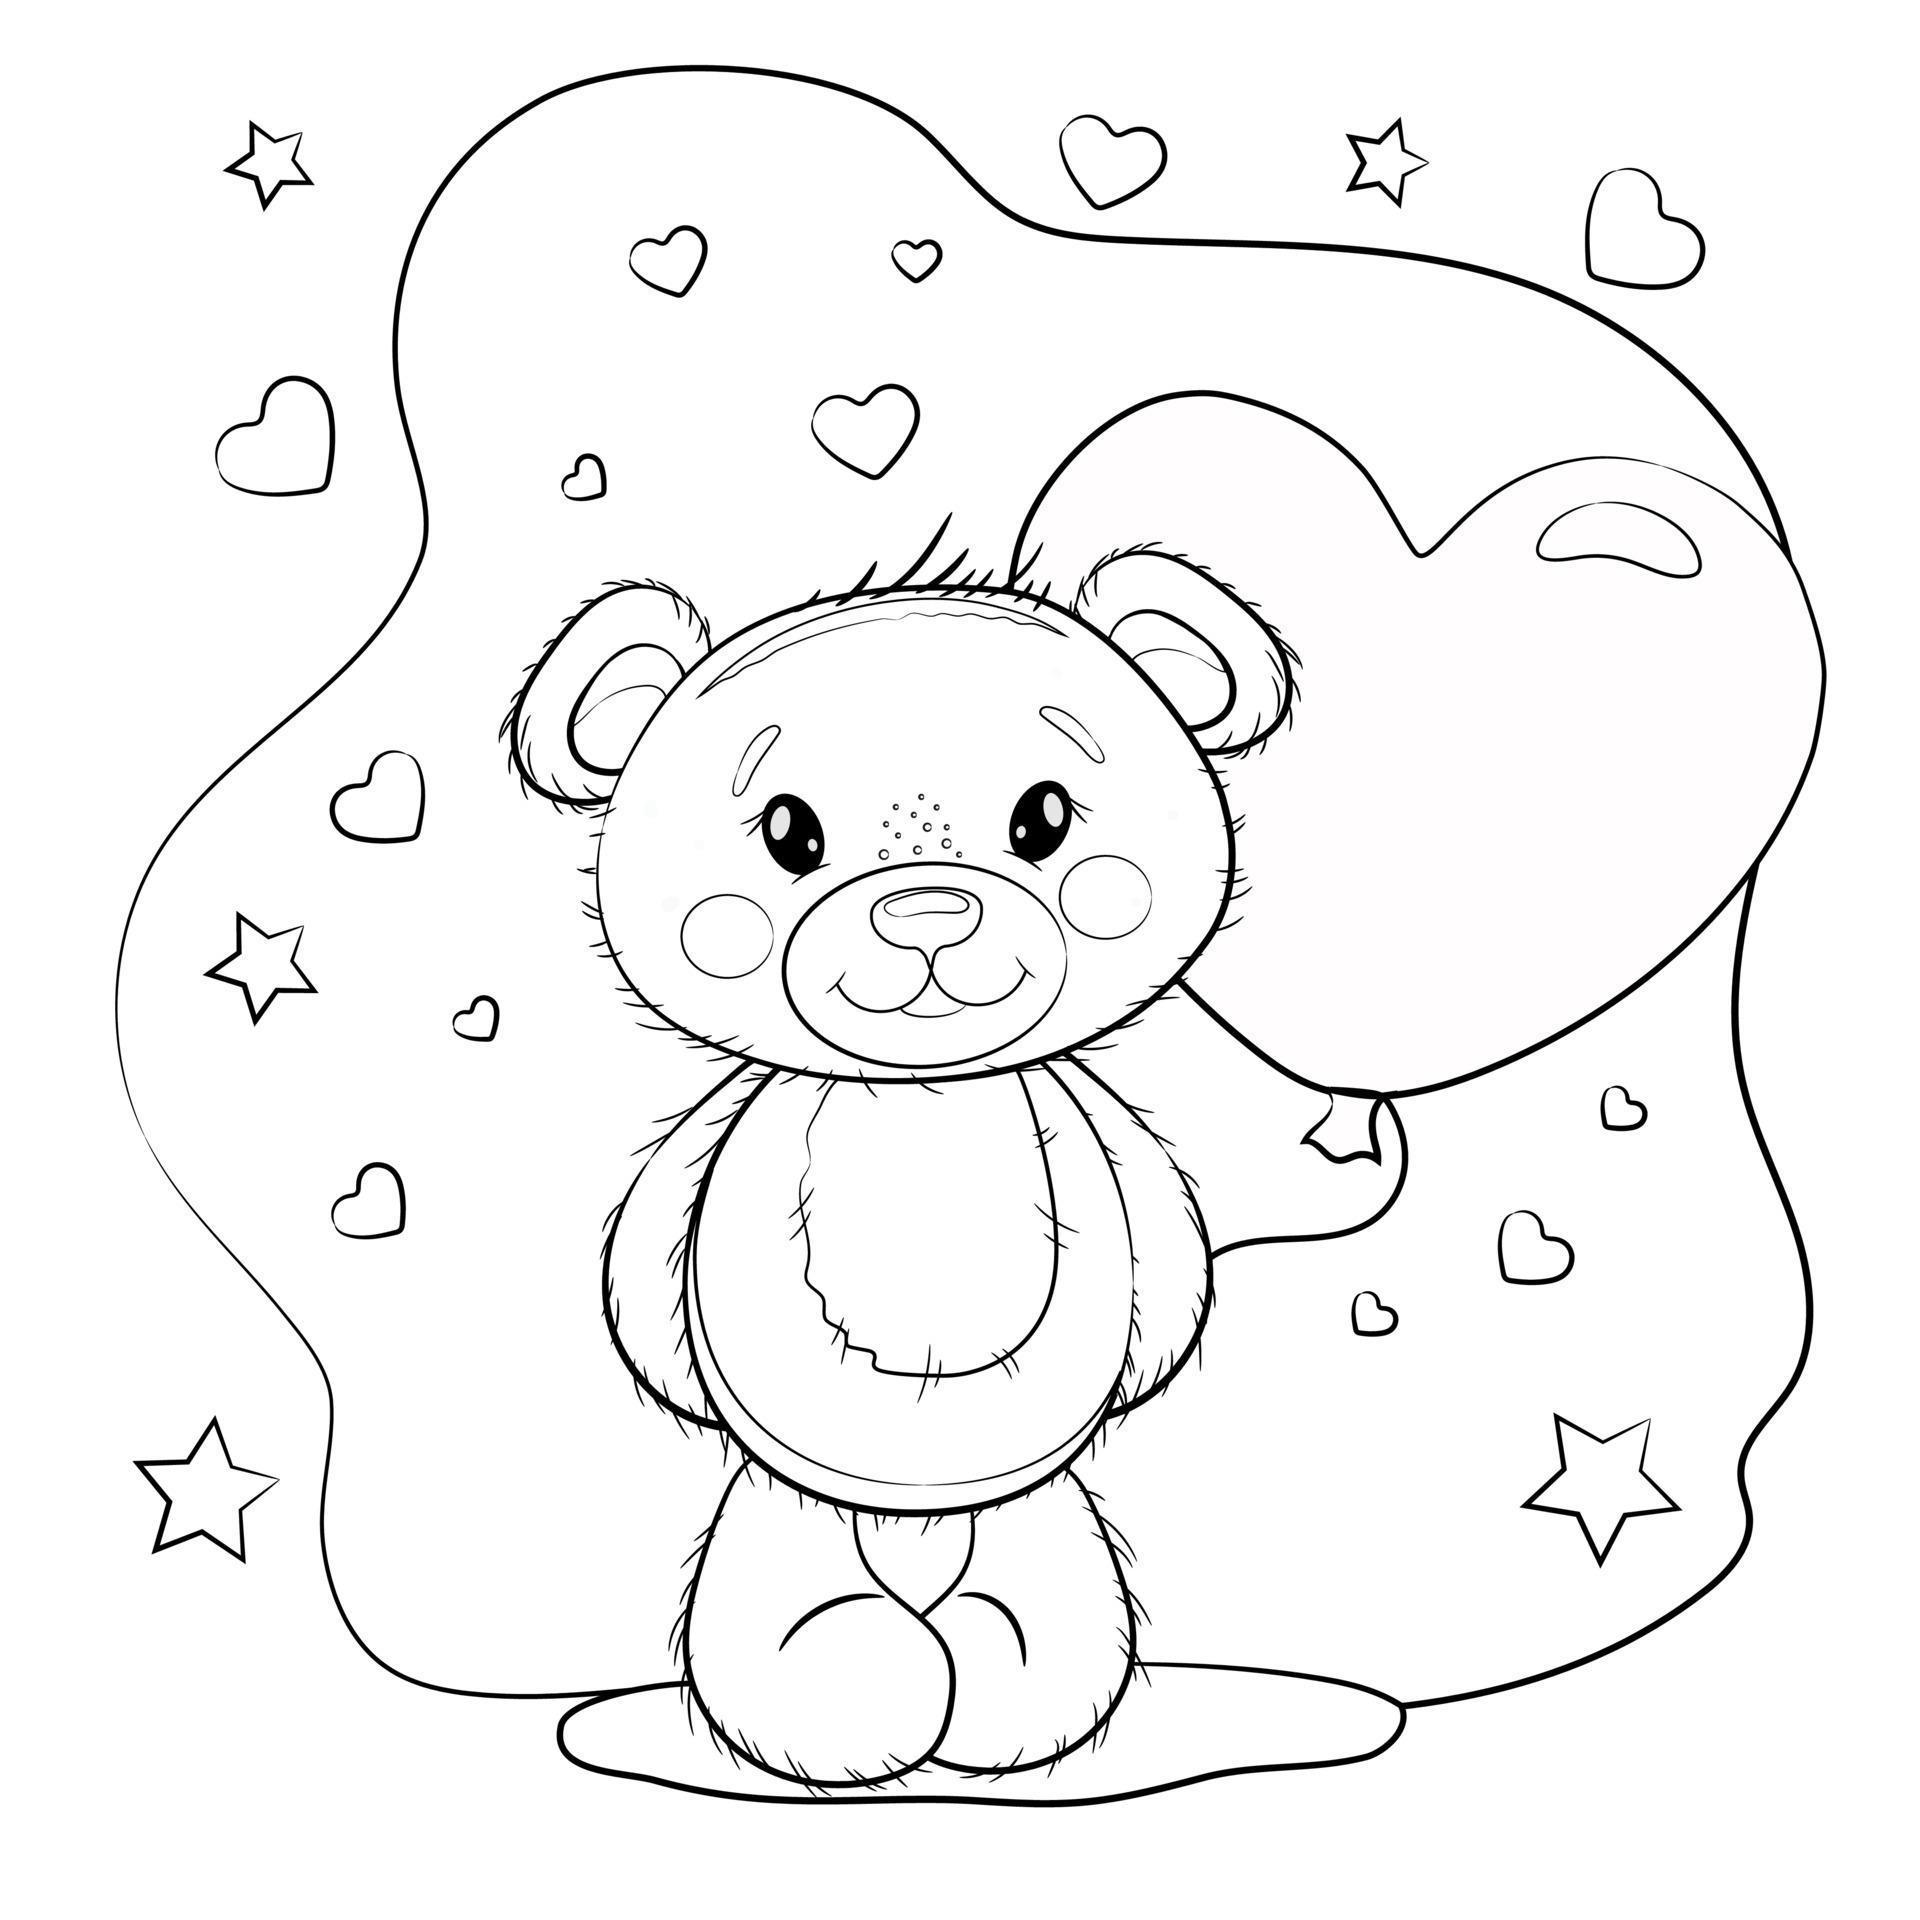 Cute teddy bear with a balloon in the shape of a heart. Teddy bear on a ...